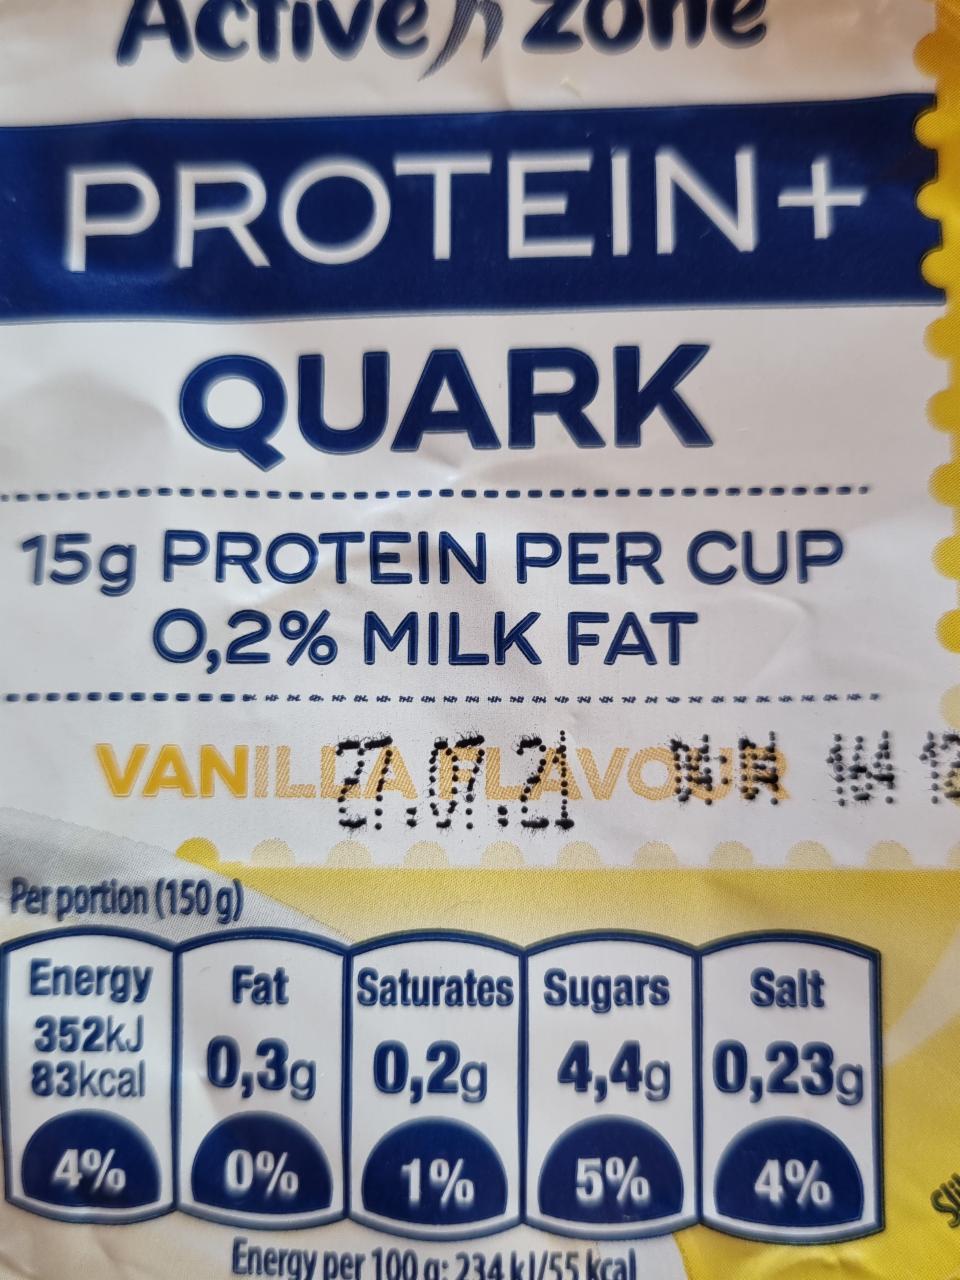 Fotografie - Protein+ Quark 15g protein Vanilla flavour Active zone